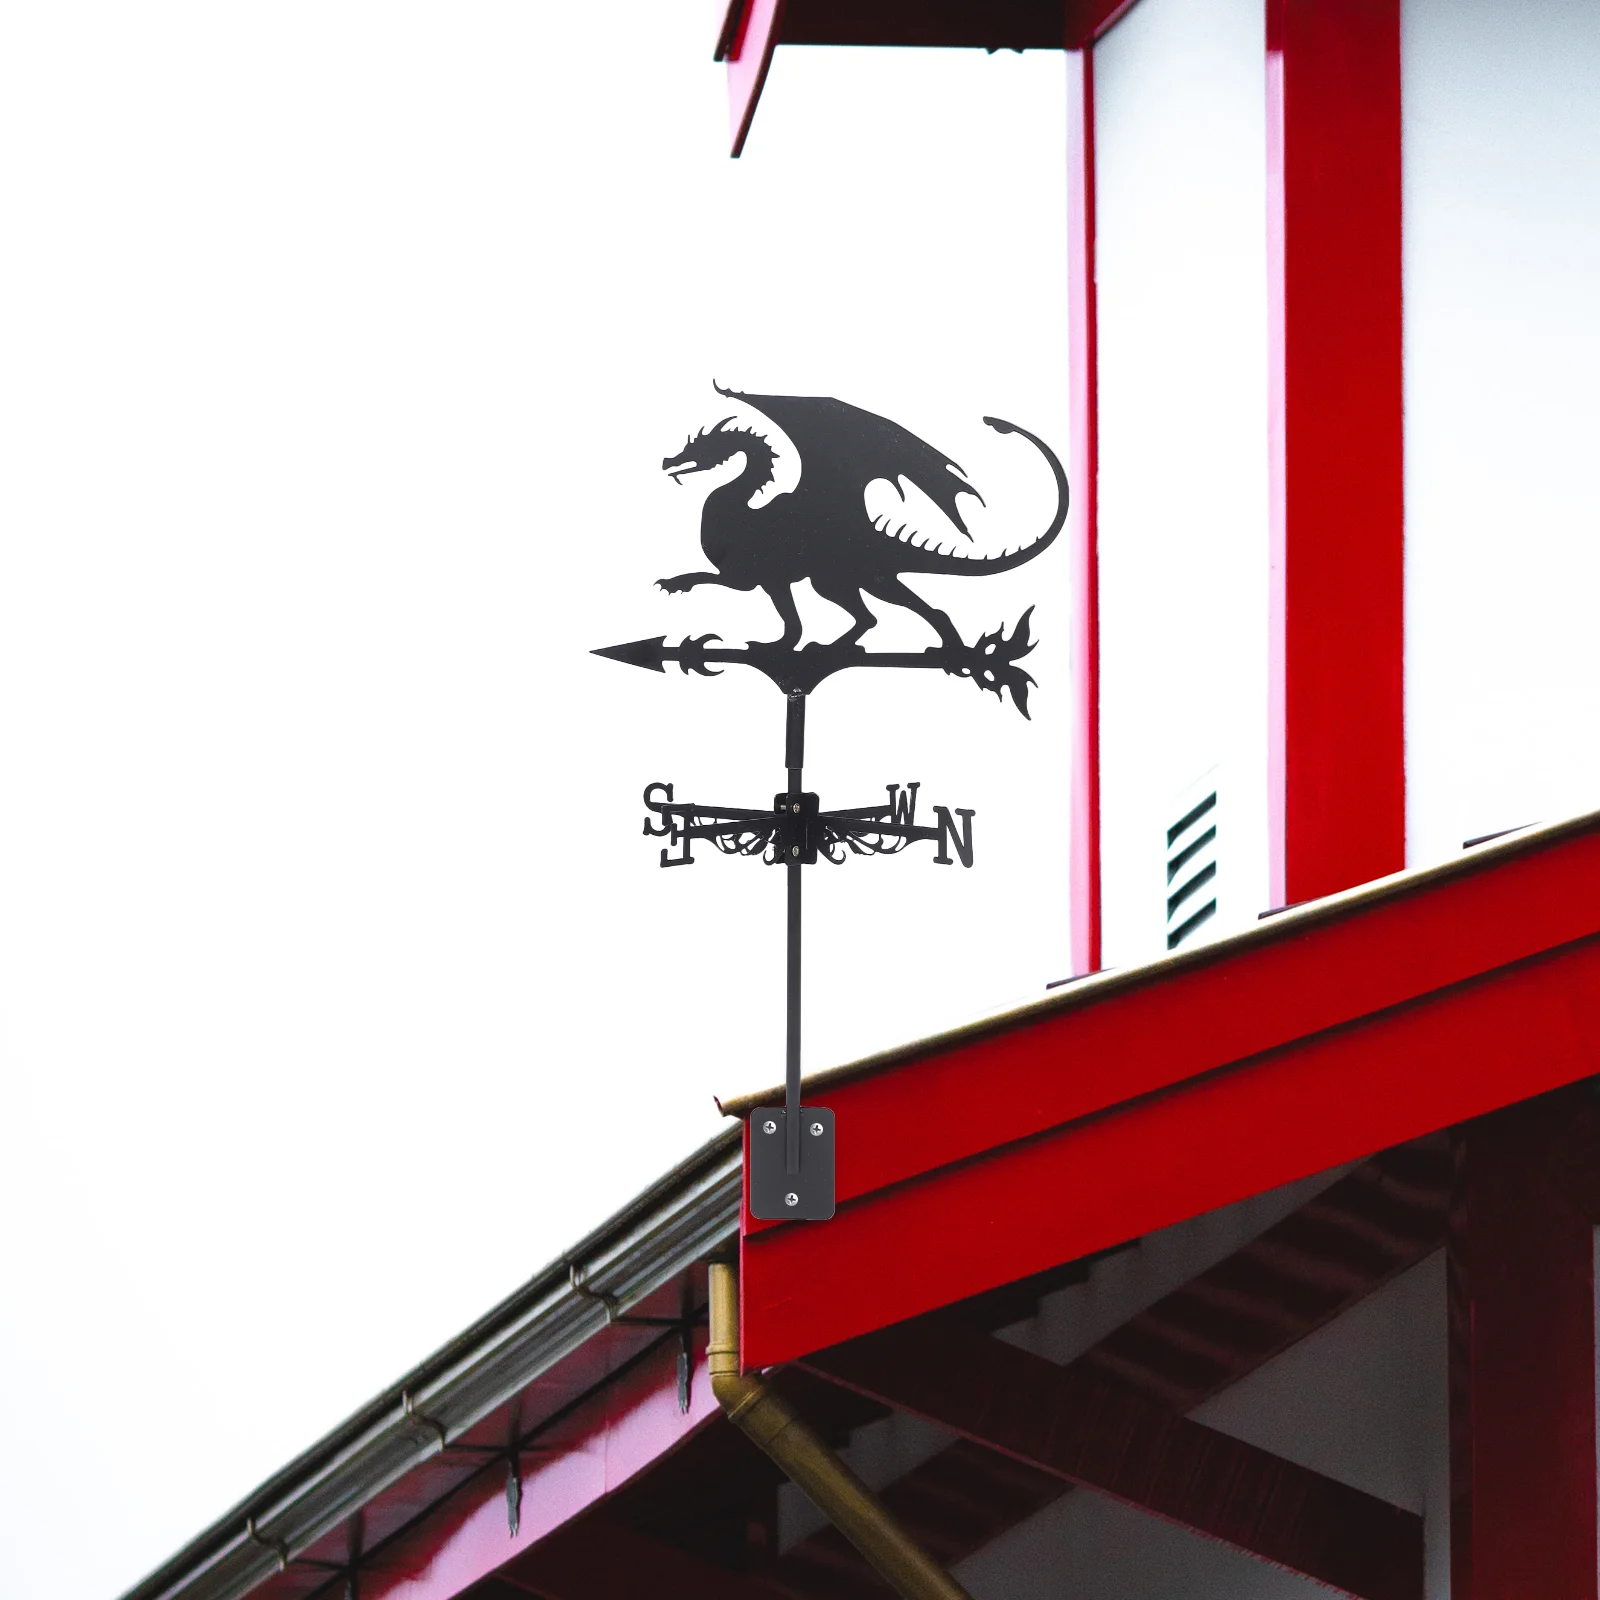 

Декор Хэллоуин летающий дракон фермерская лопатка кронштейн для крыши индикатор направления ветра комплект наружного внутреннего дворика для